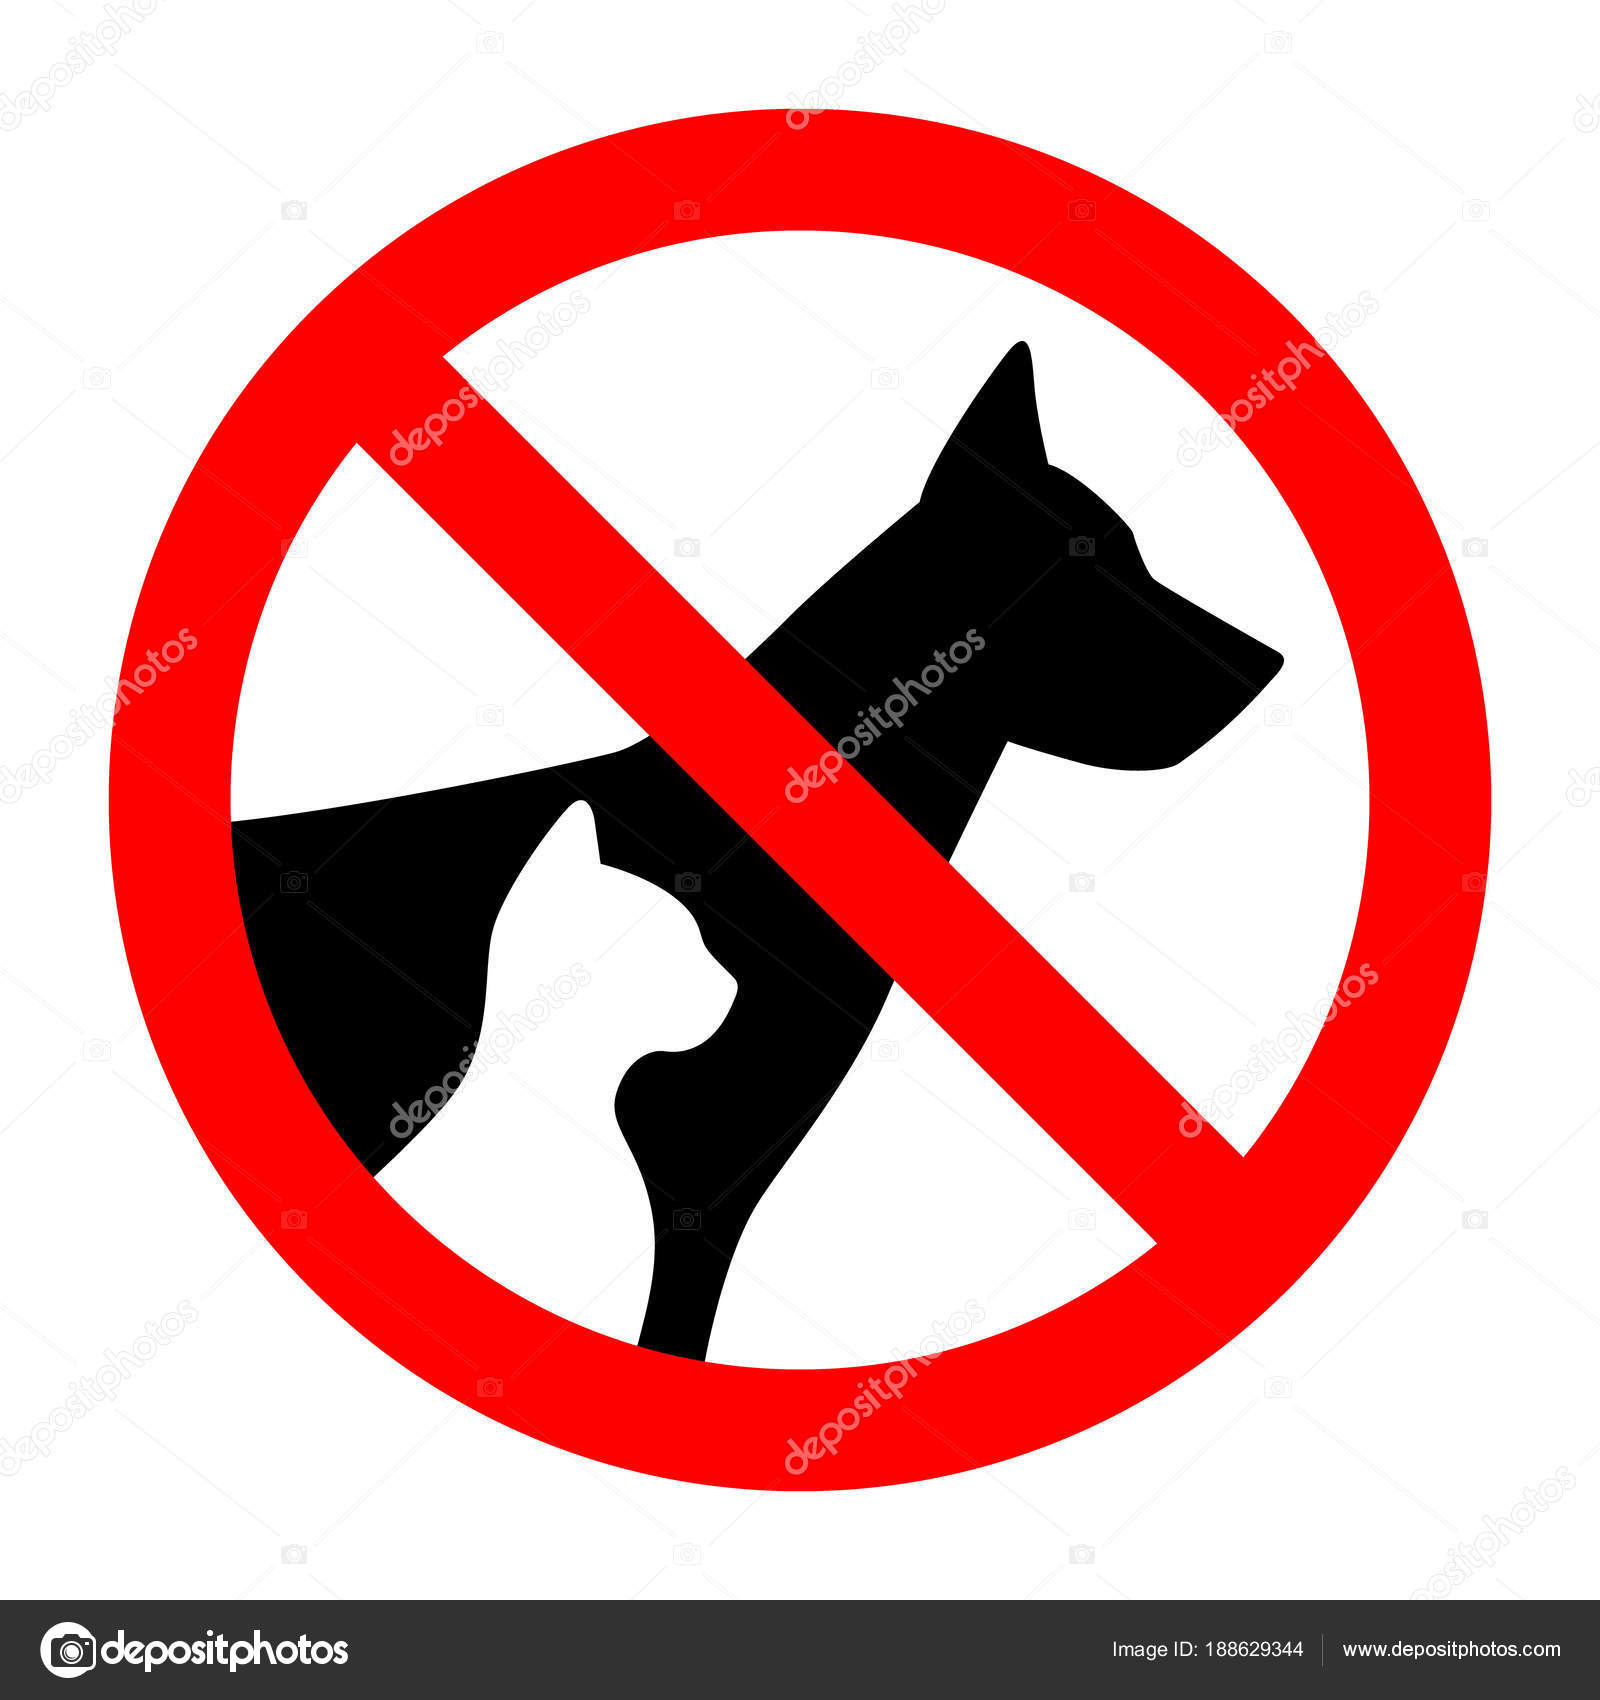 Faceta apetito aves de corral Prohibido perros imágenes de stock de arte vectorial | Depositphotos